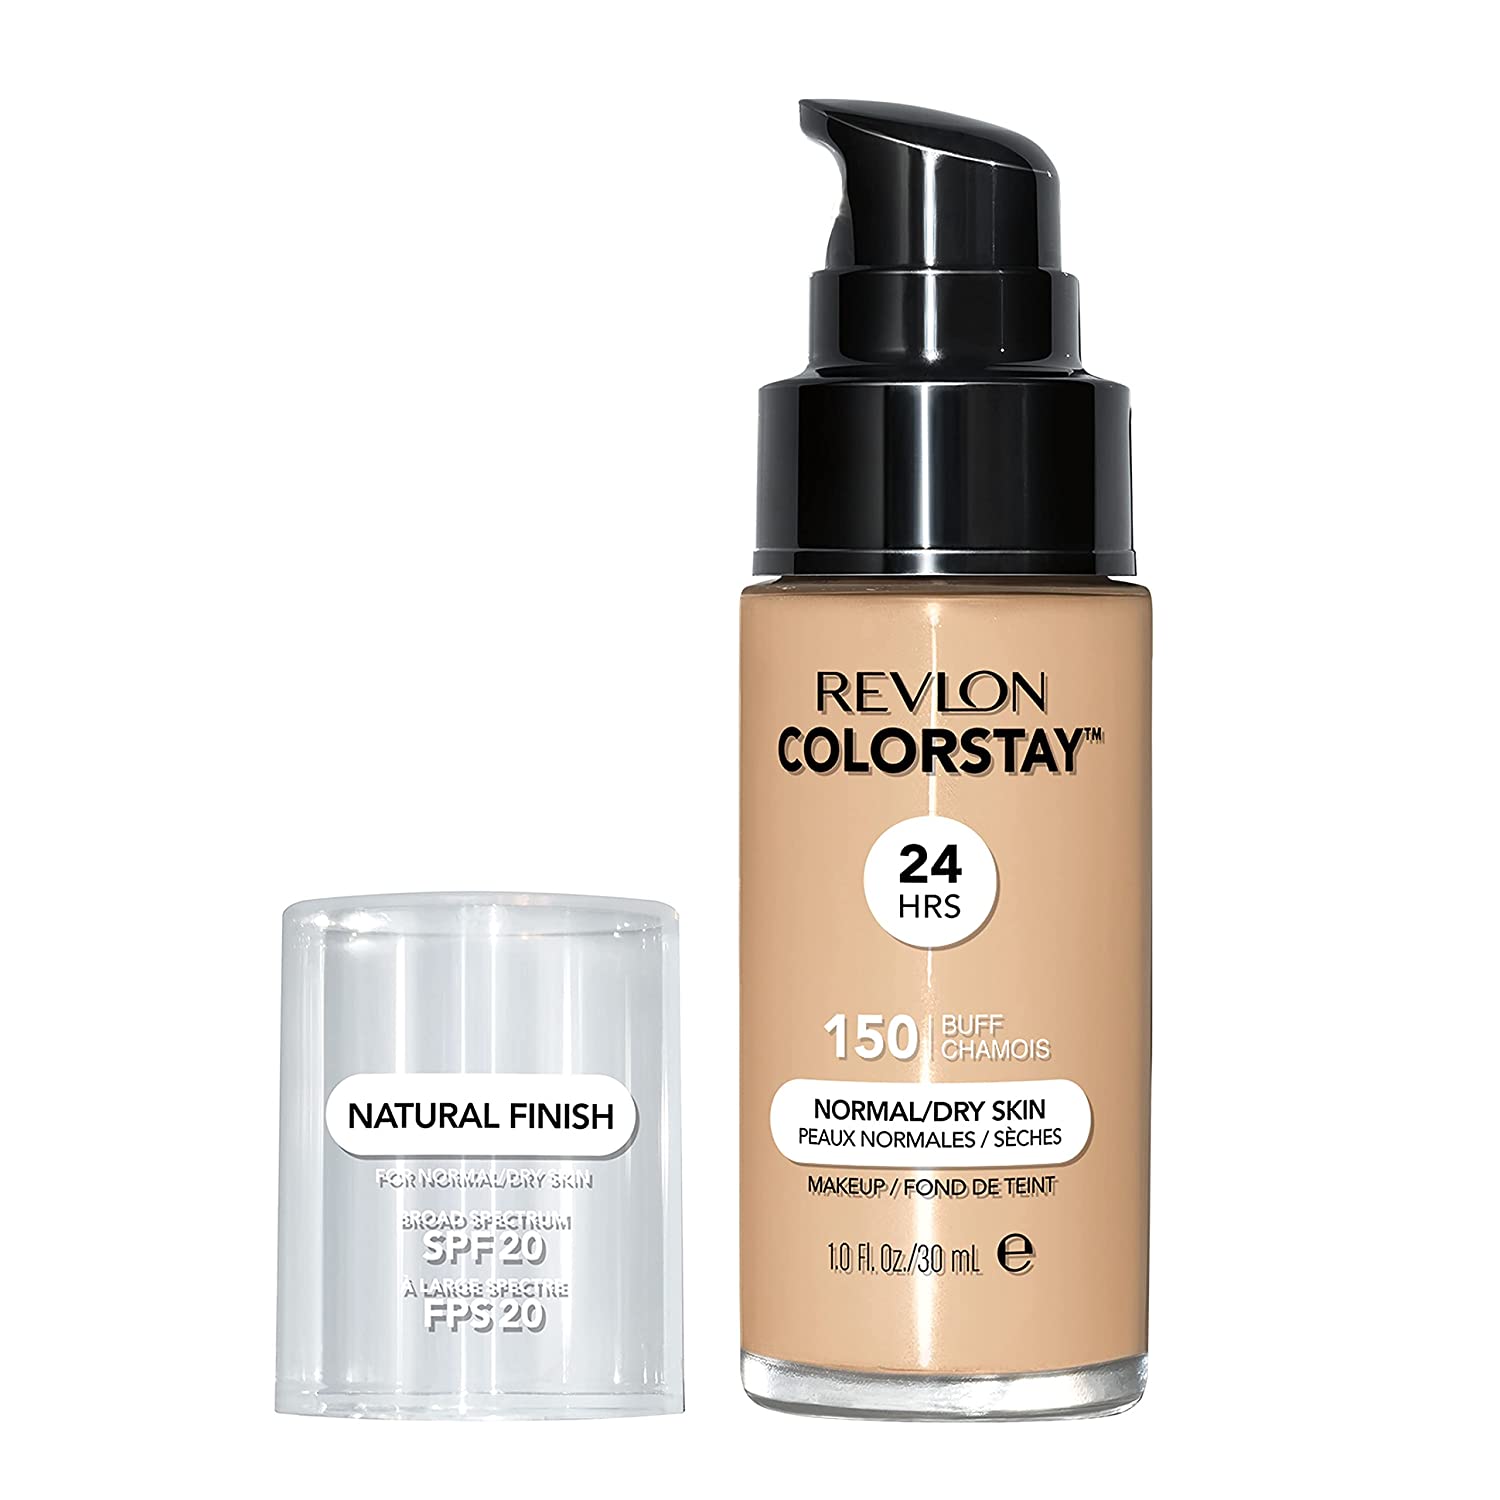 Тональный крем для нормальной и сухой кожи лица Revlon Colorstay Makeup Normal and Dry Skin SPF 20, тон 150 (Buff), 30 мл (423028) - фото 1